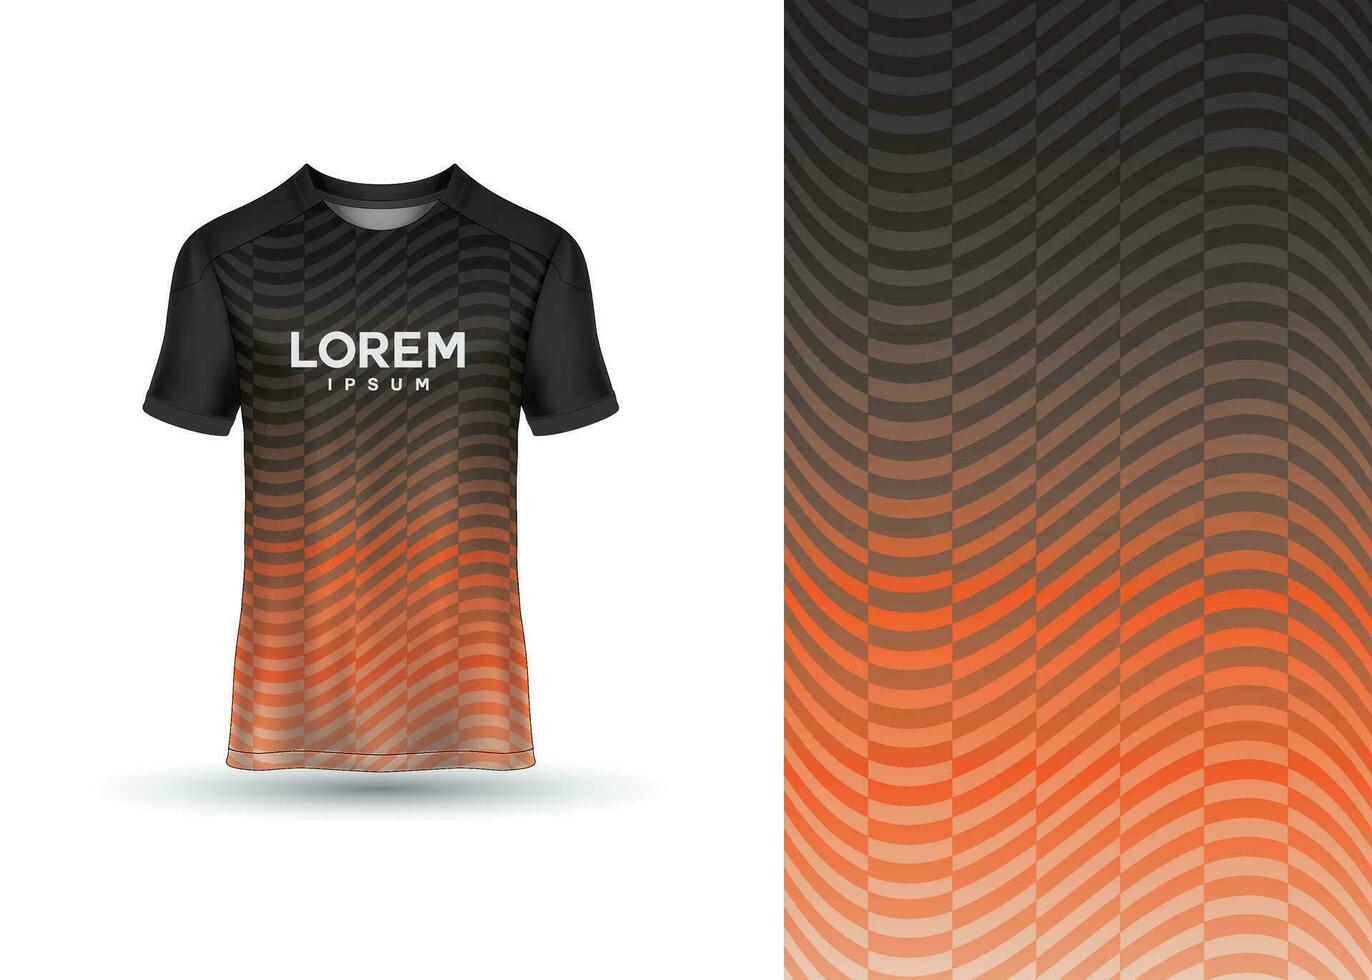 sport- t-shirts, Amerikaans voetbal truien voor Amerikaans voetbal Clubs. uniform voorkant visie vector